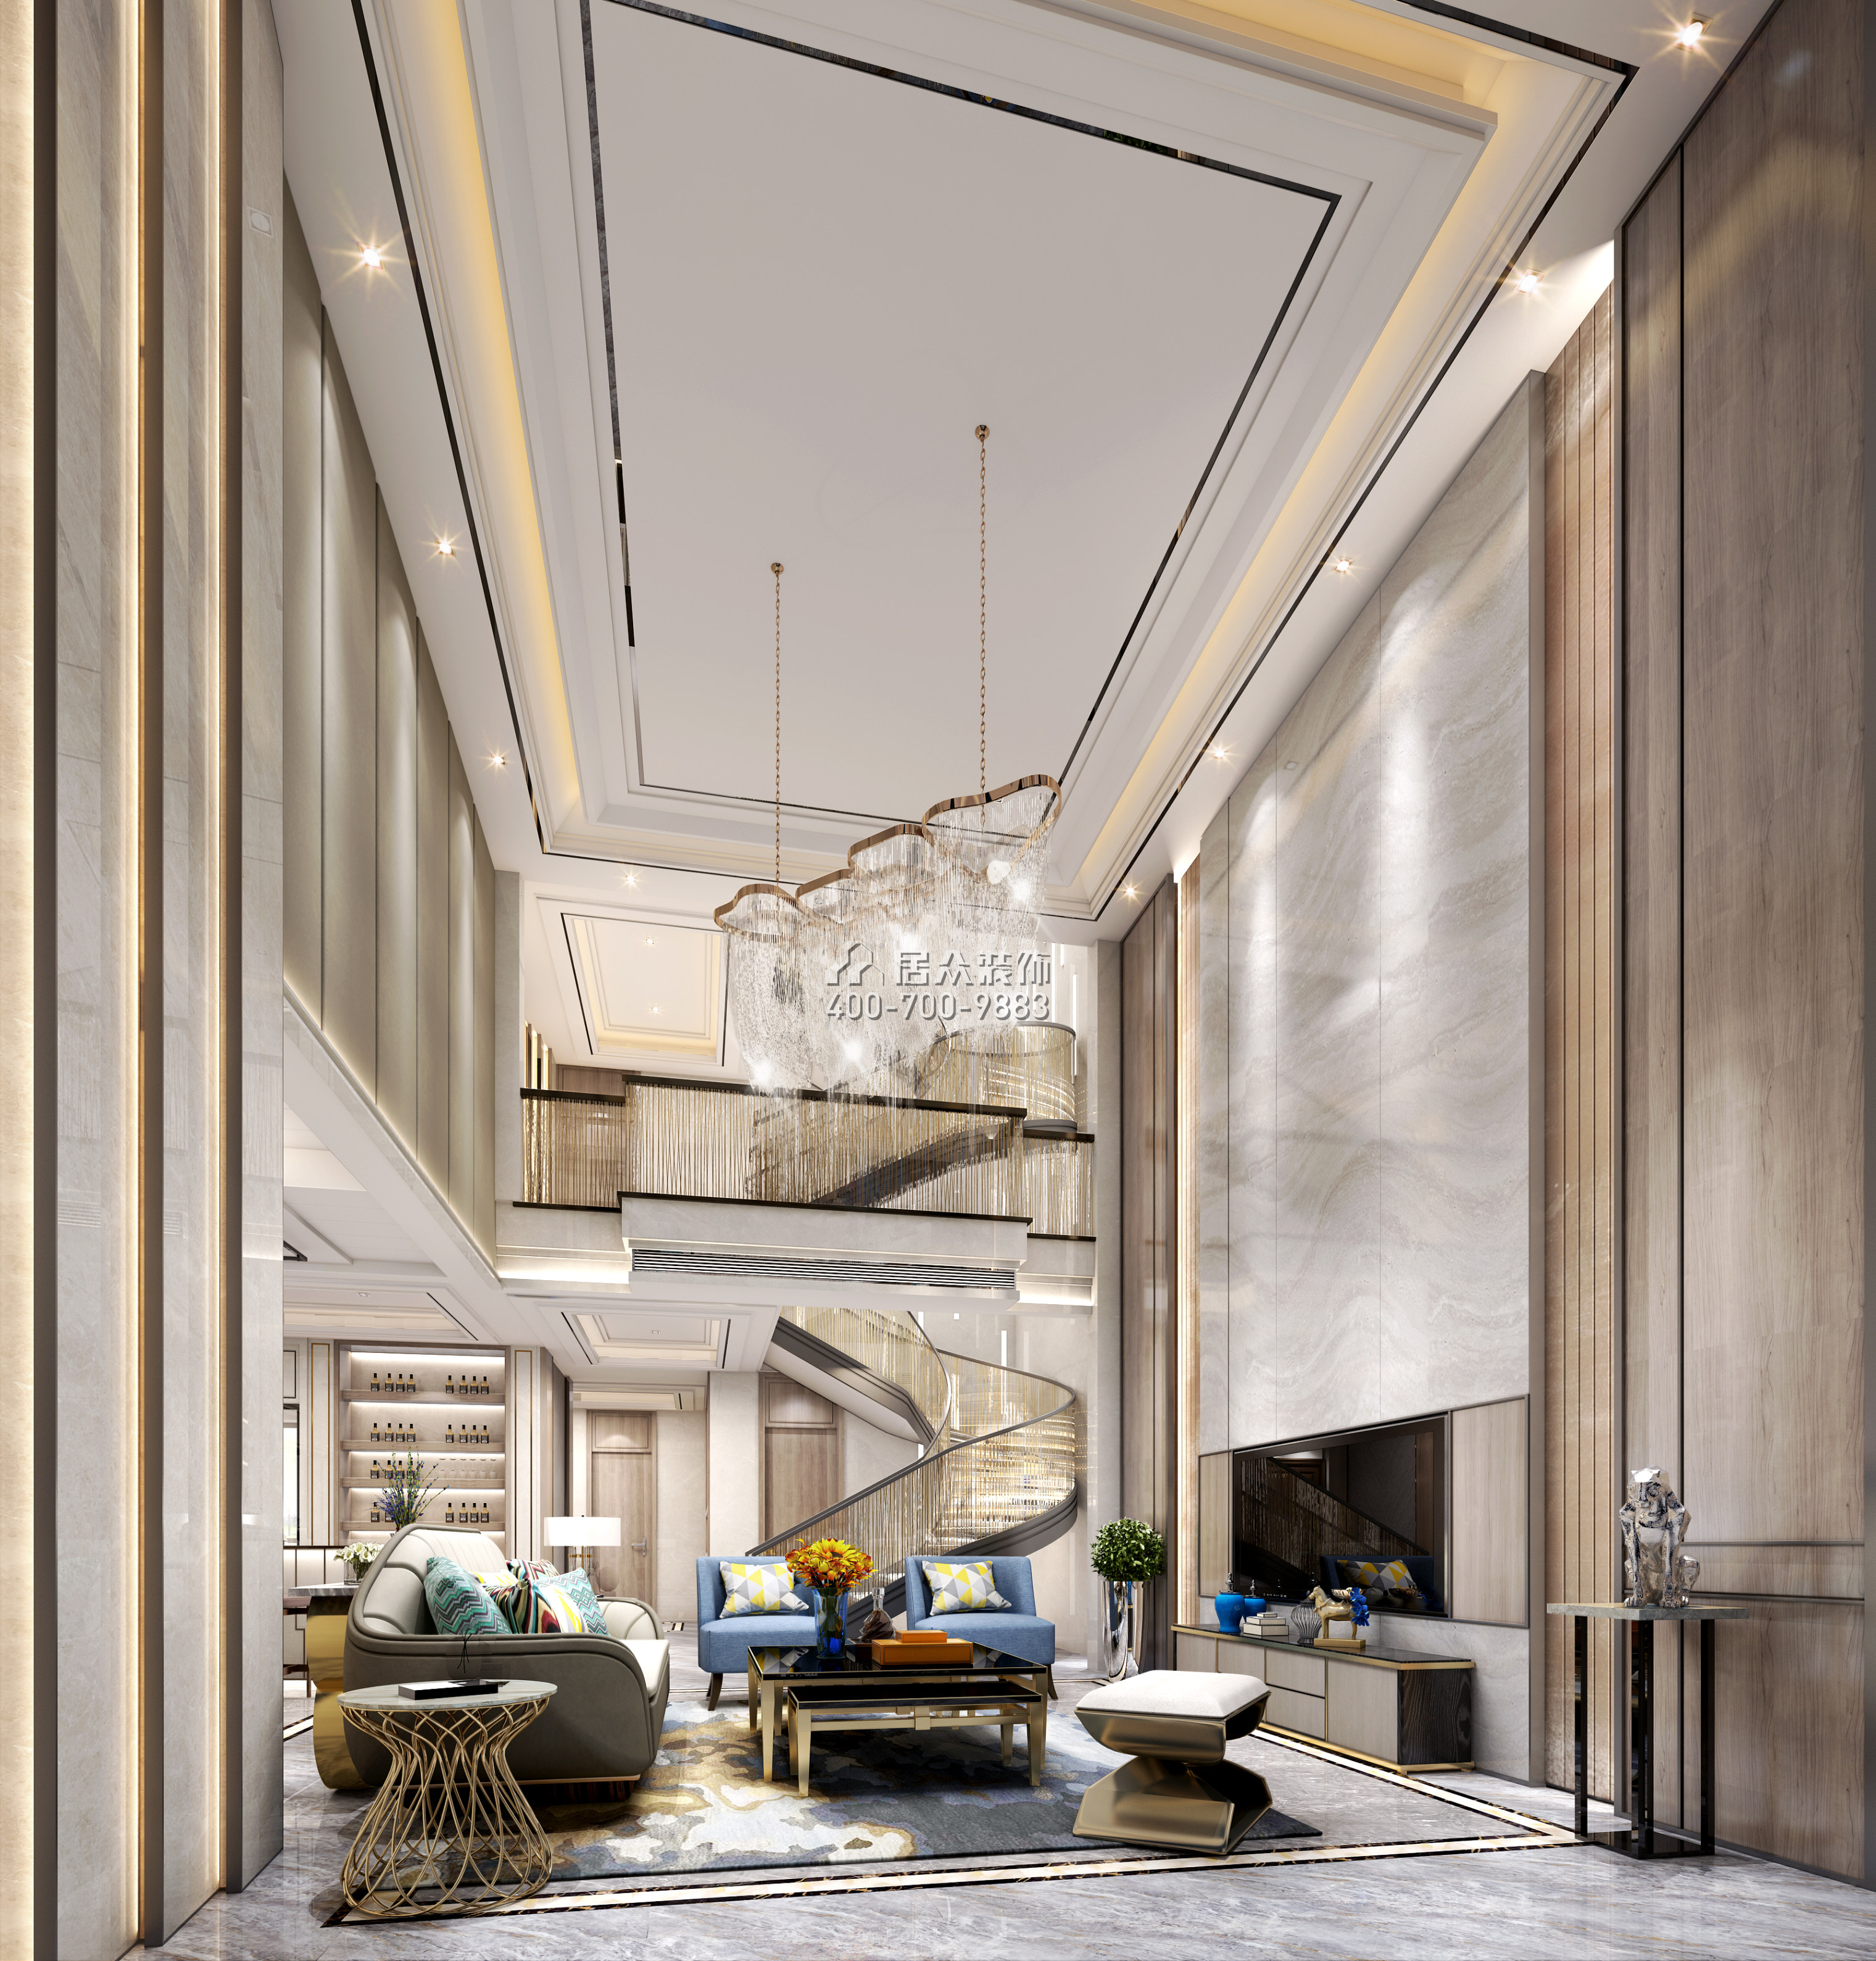 海逸豪庭326平方米混搭風格別墅戶型客廳裝修效果圖